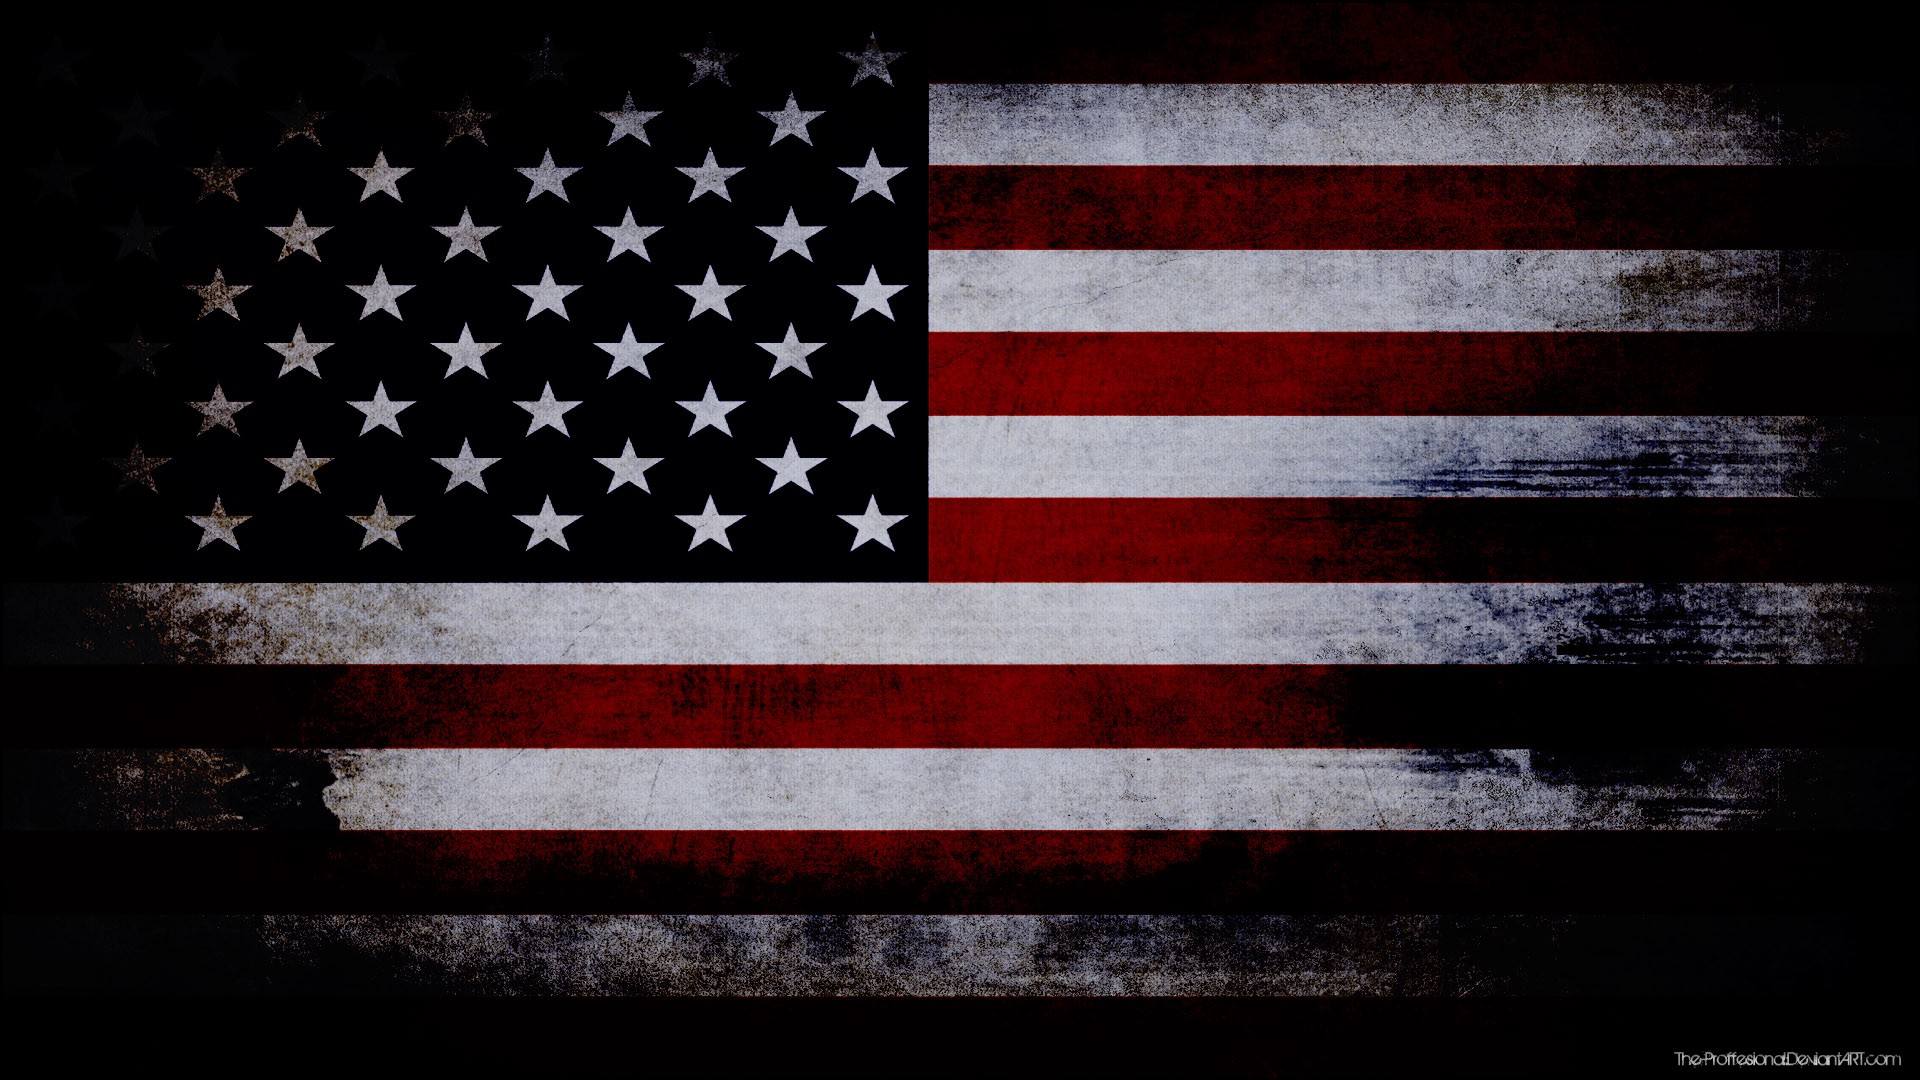 General 1920x1080 dark flag USA grunge American flag watermarked digital art DeviantArt